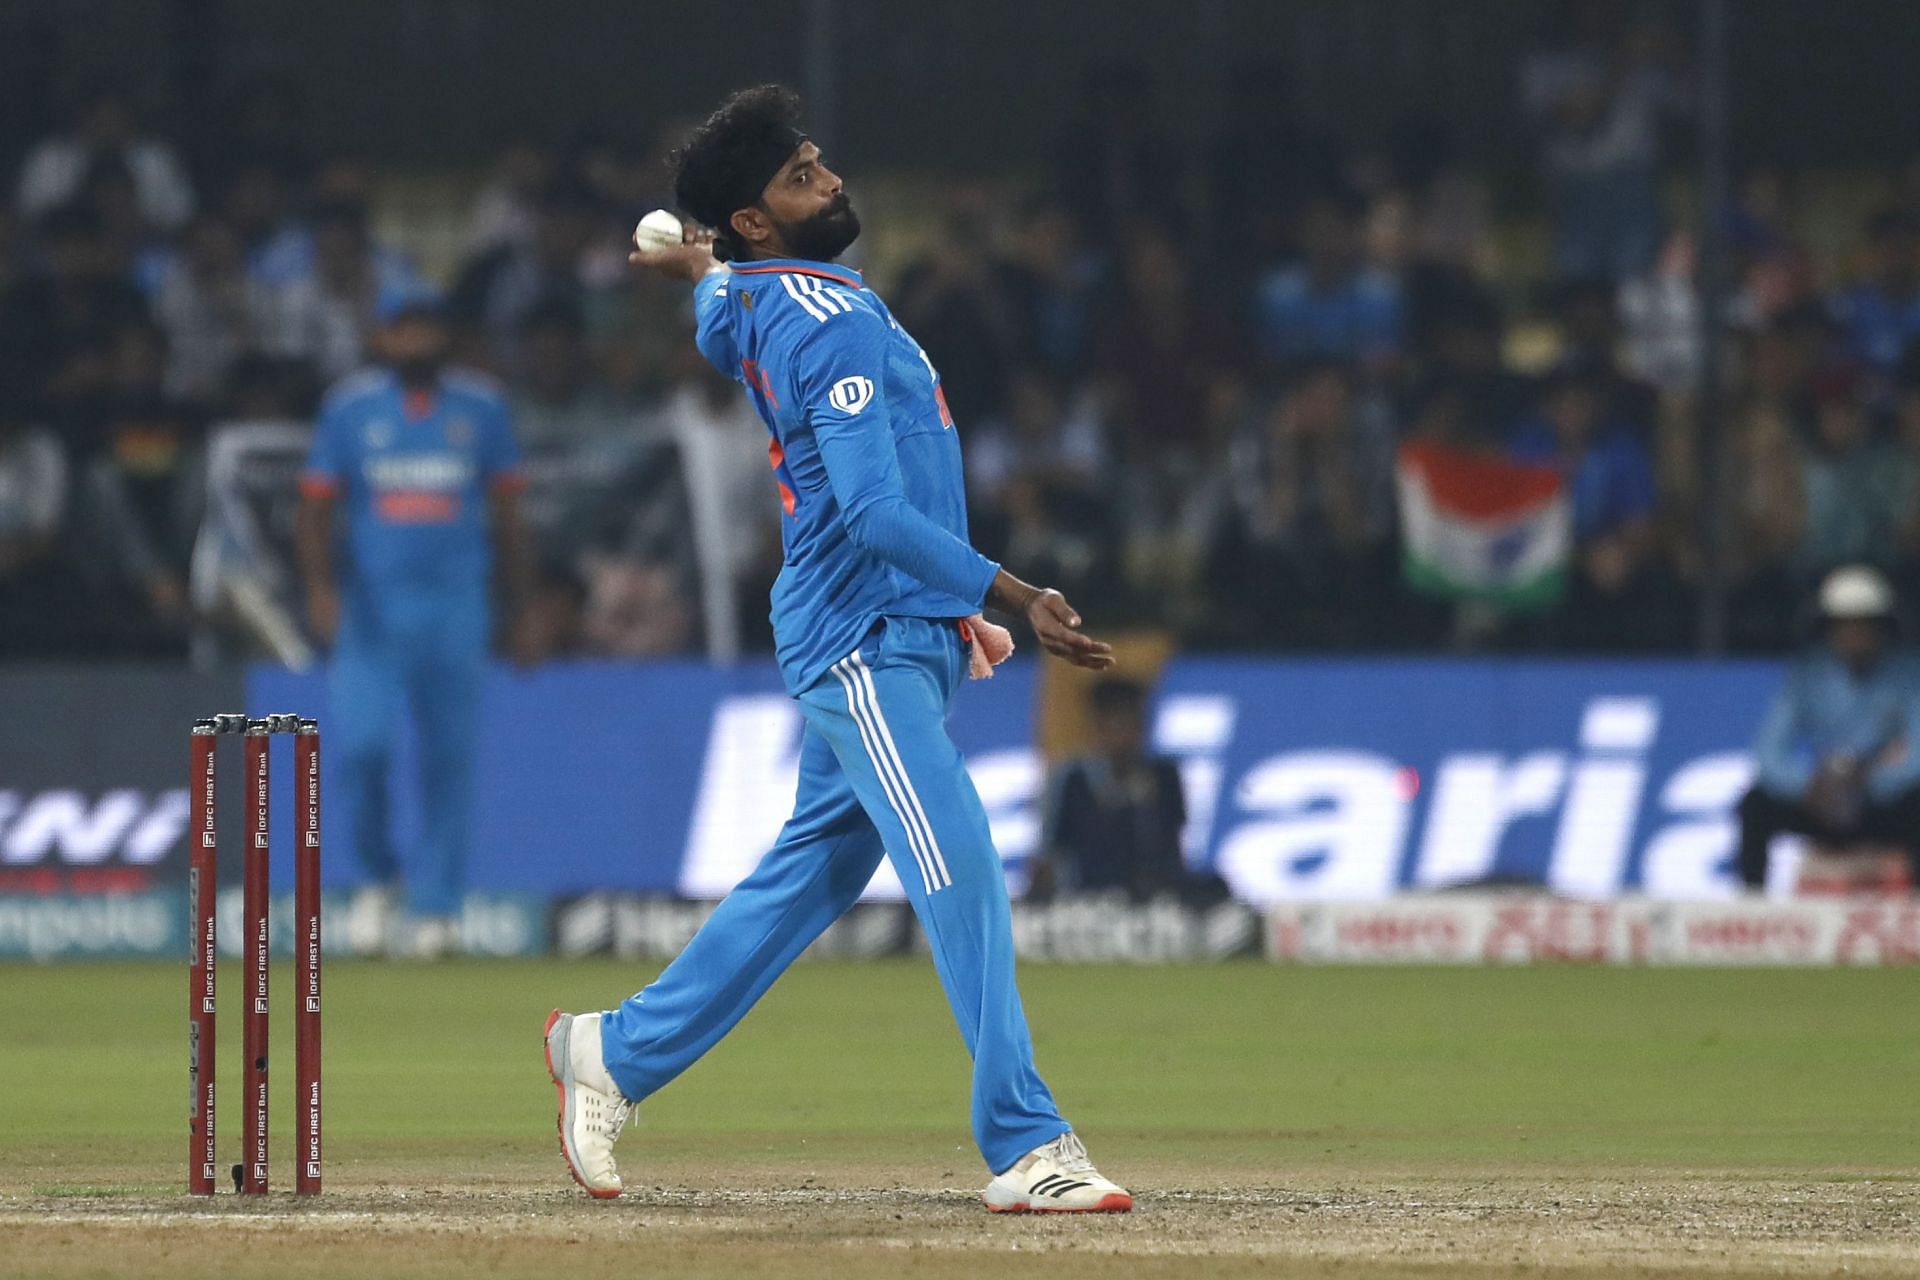 India v Australia - ODI Series: Game 2